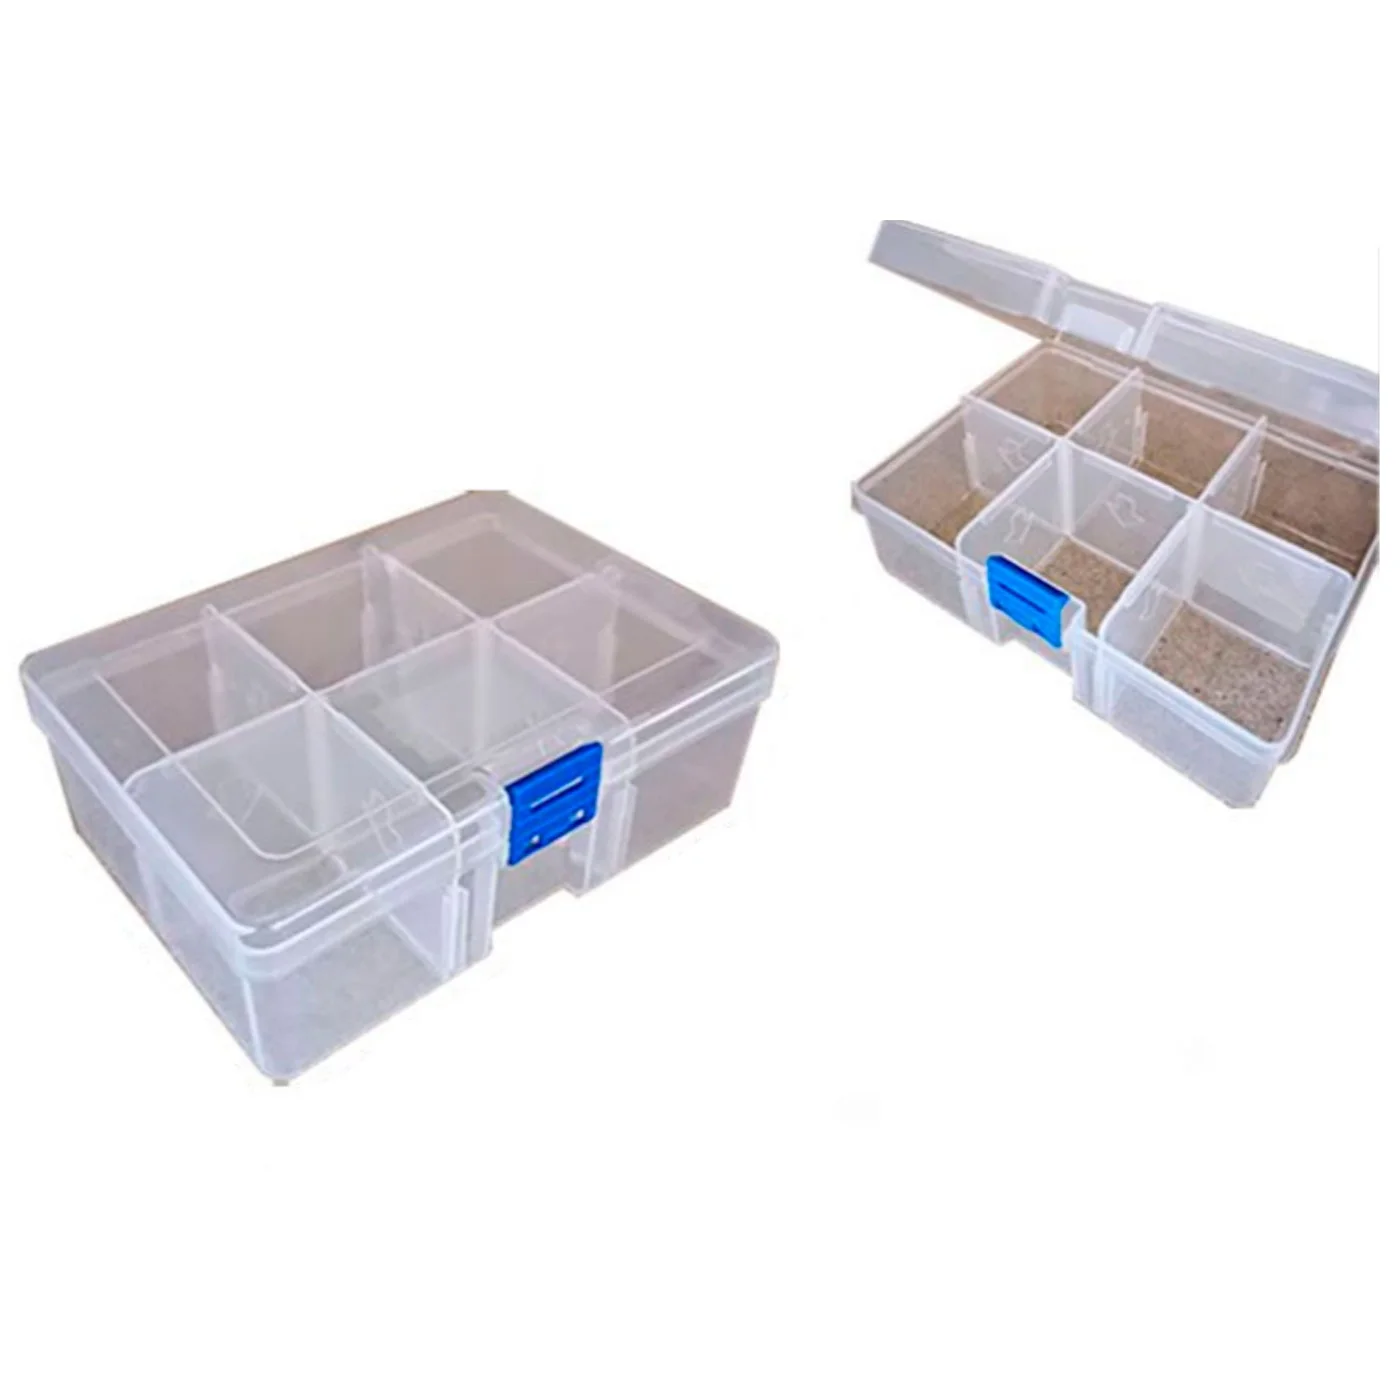 Tradineur - Caja organizadora multiusos con separadores, 10